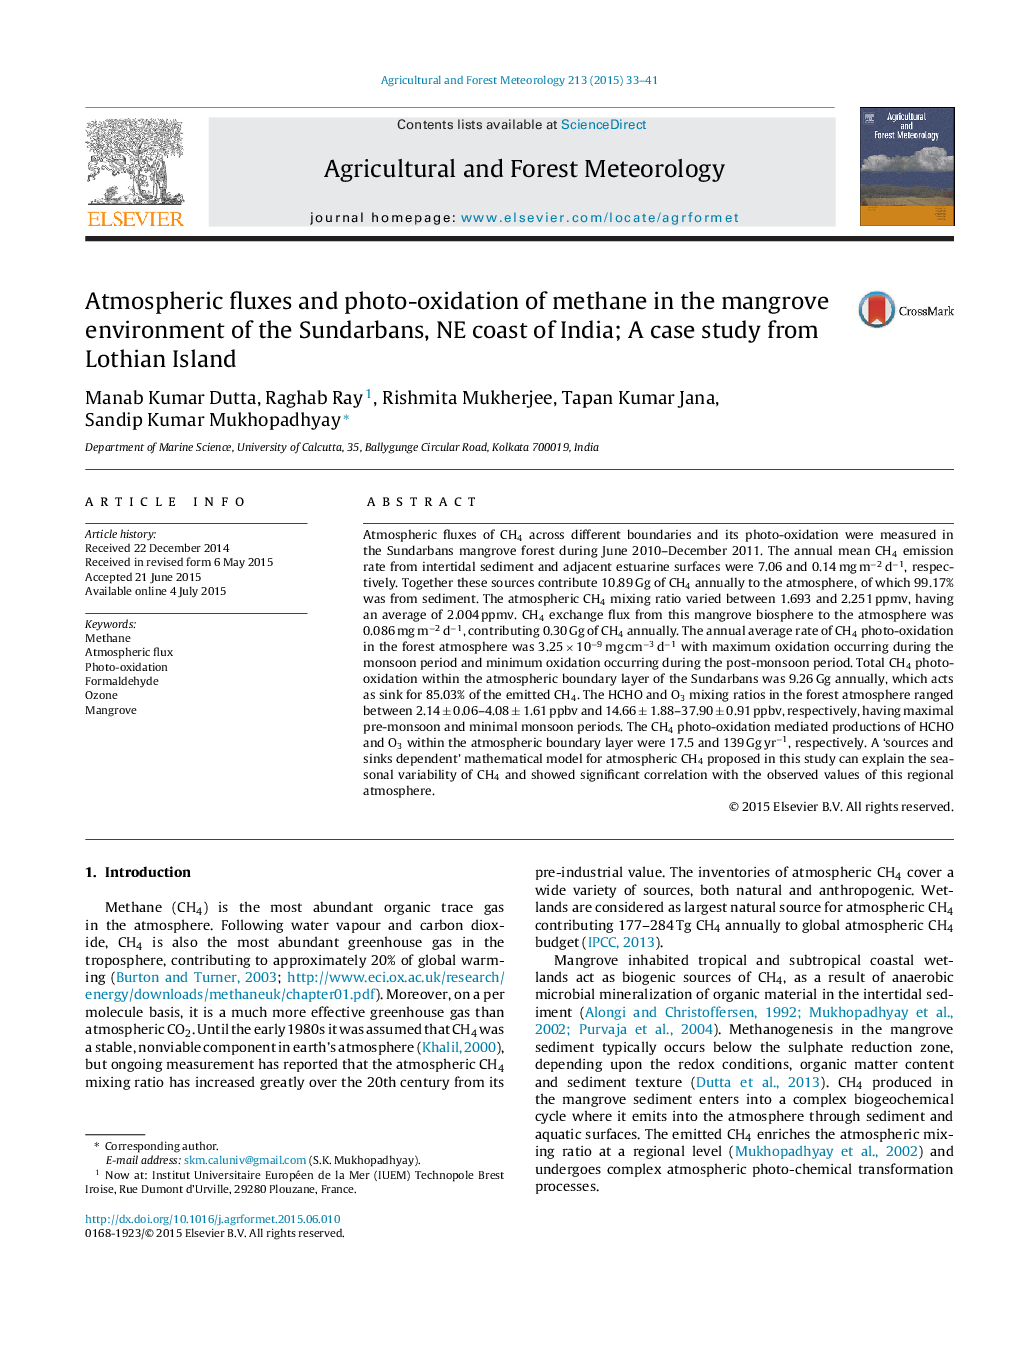 فلوهای اتمسفر و عکس اکسیداسیون متان در محیط مانگرو ساندبوران، سواحل نیوجرسی هند؛ مطالعه موردی جزیره لوتیان 